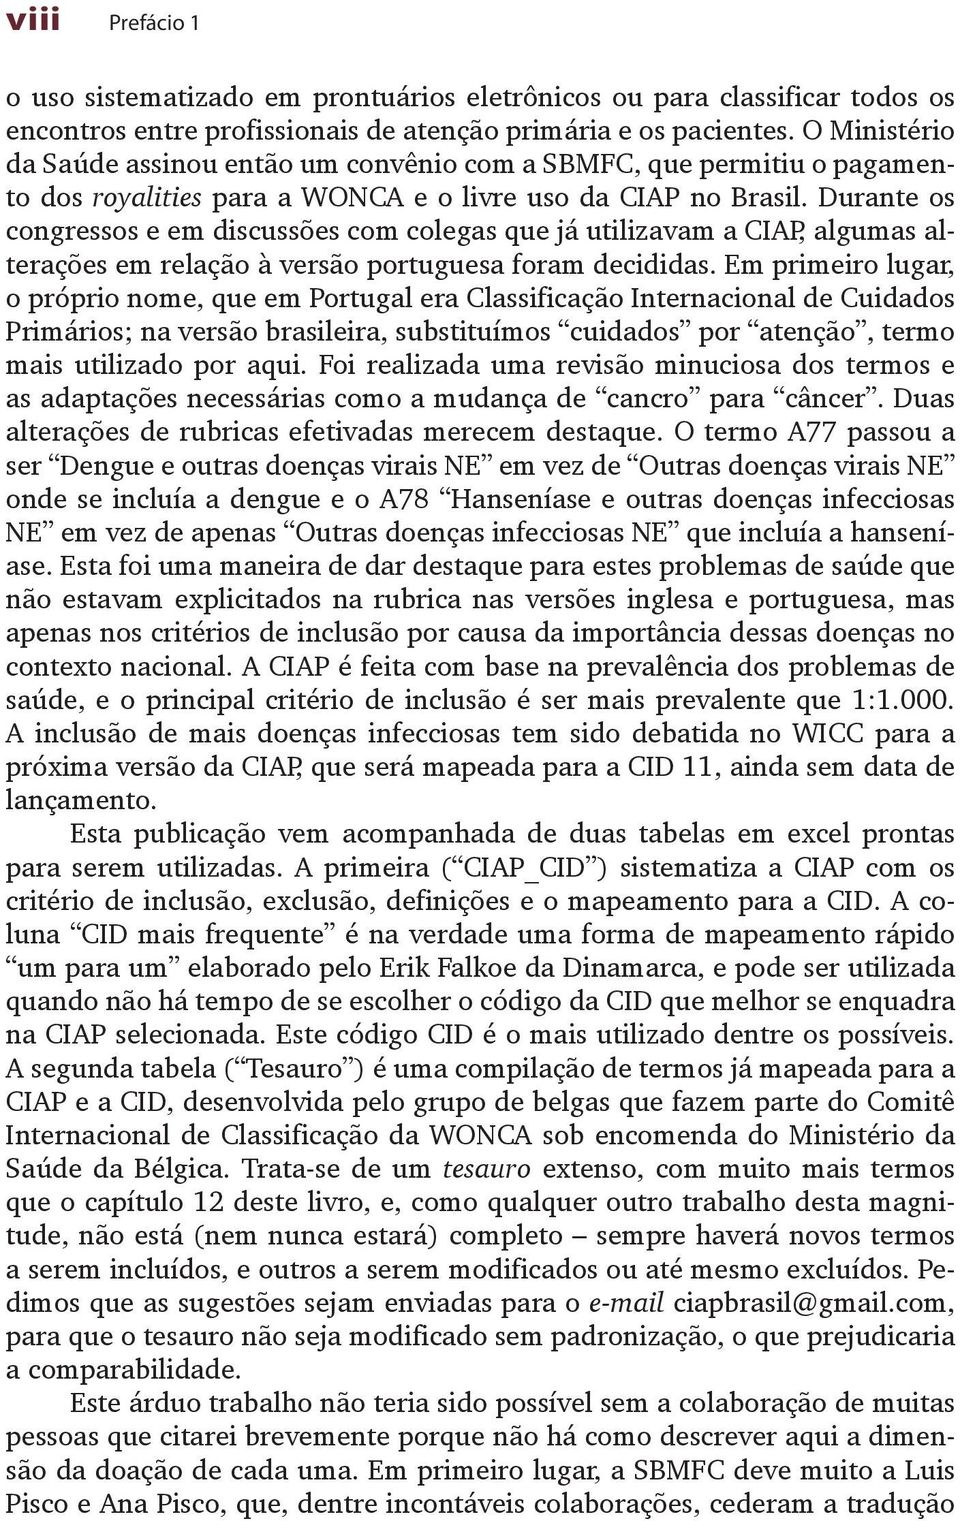 Durante os congressos e em discussões com colegas que já utilizavam a CIAP, algumas alterações em relação à versão portuguesa foram decididas.